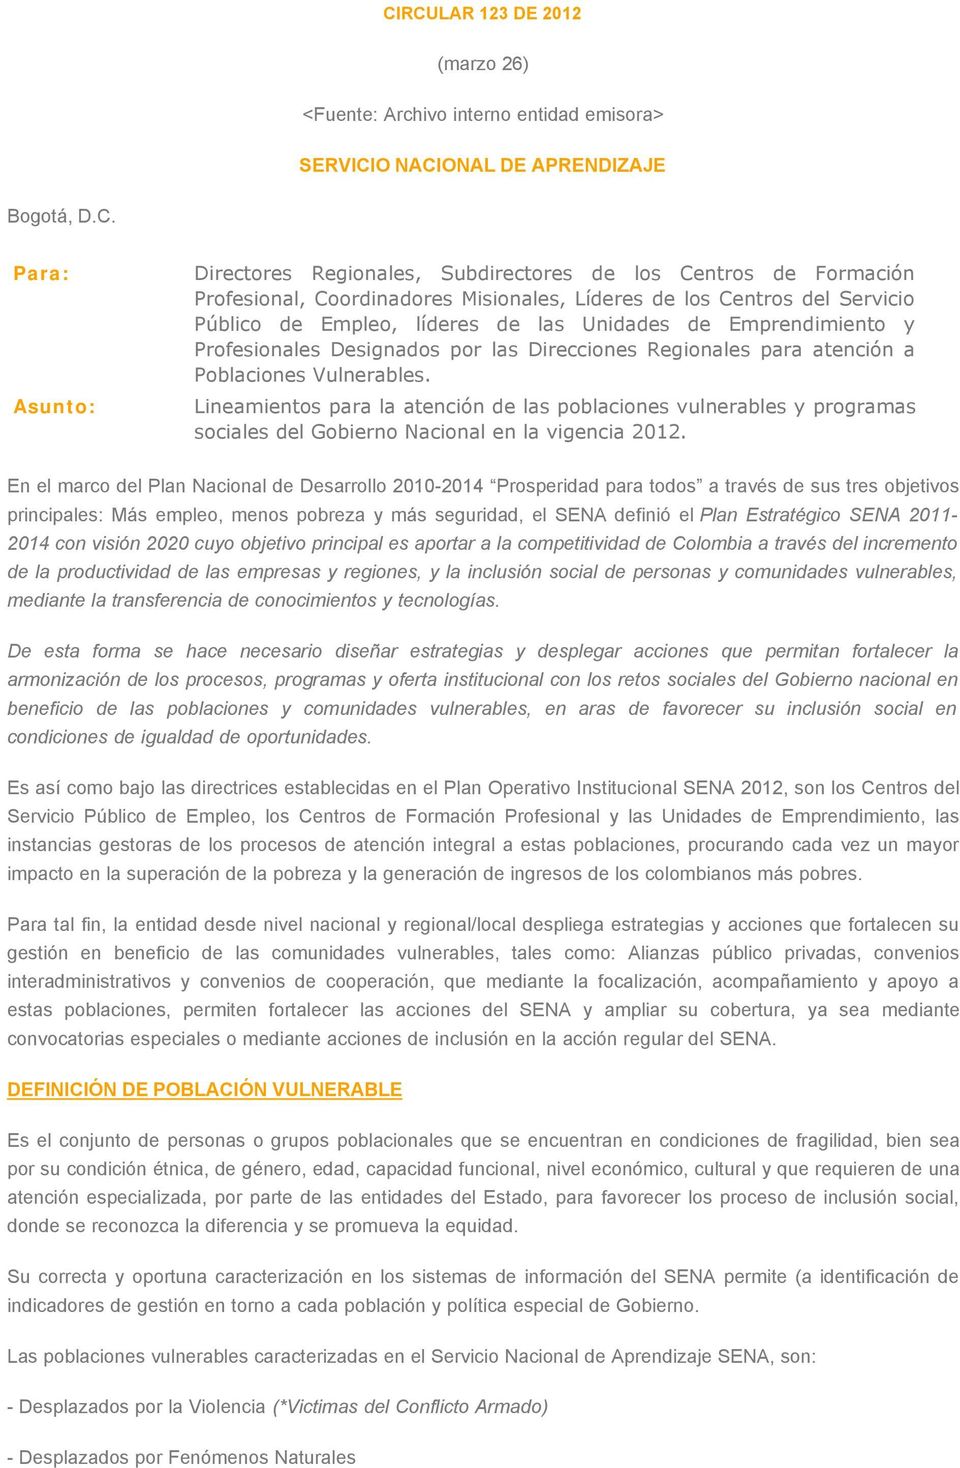 atención a Poblaciones Vulnerables. Asunto: Lineamientos para la atención de las poblaciones vulnerables y programas sociales del Gobierno Nacional en la vigencia 2012.